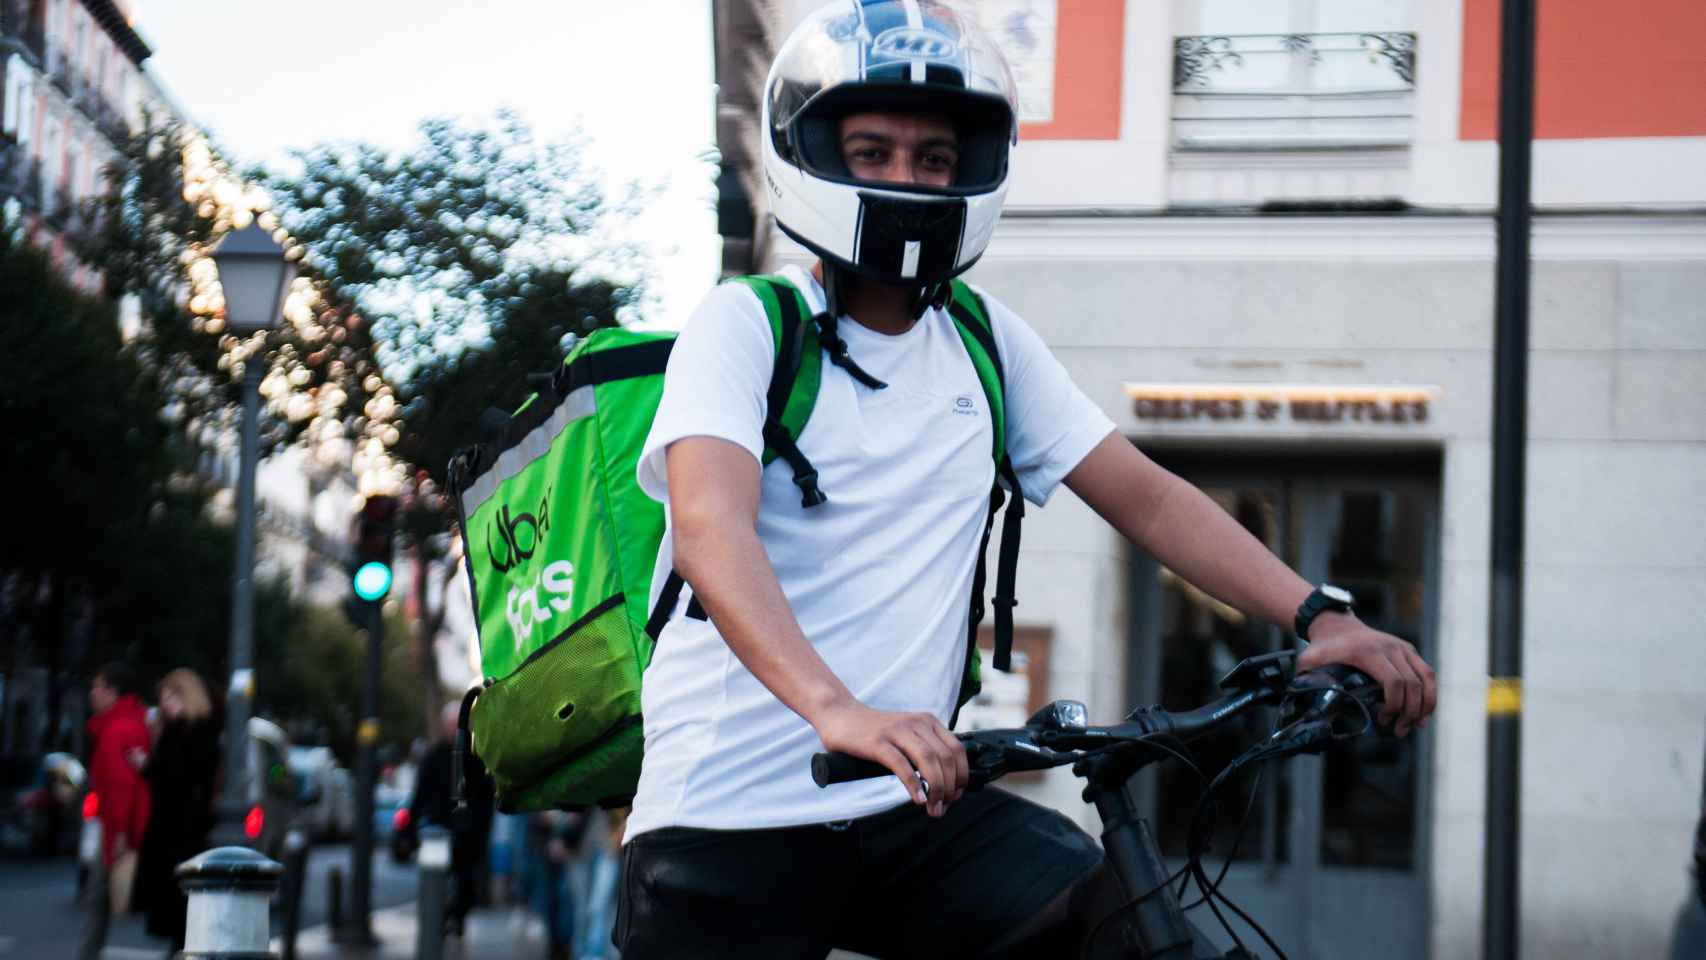 Alfredo, el único repartidor con bici que lleva casco de moto, según sus compañeros.